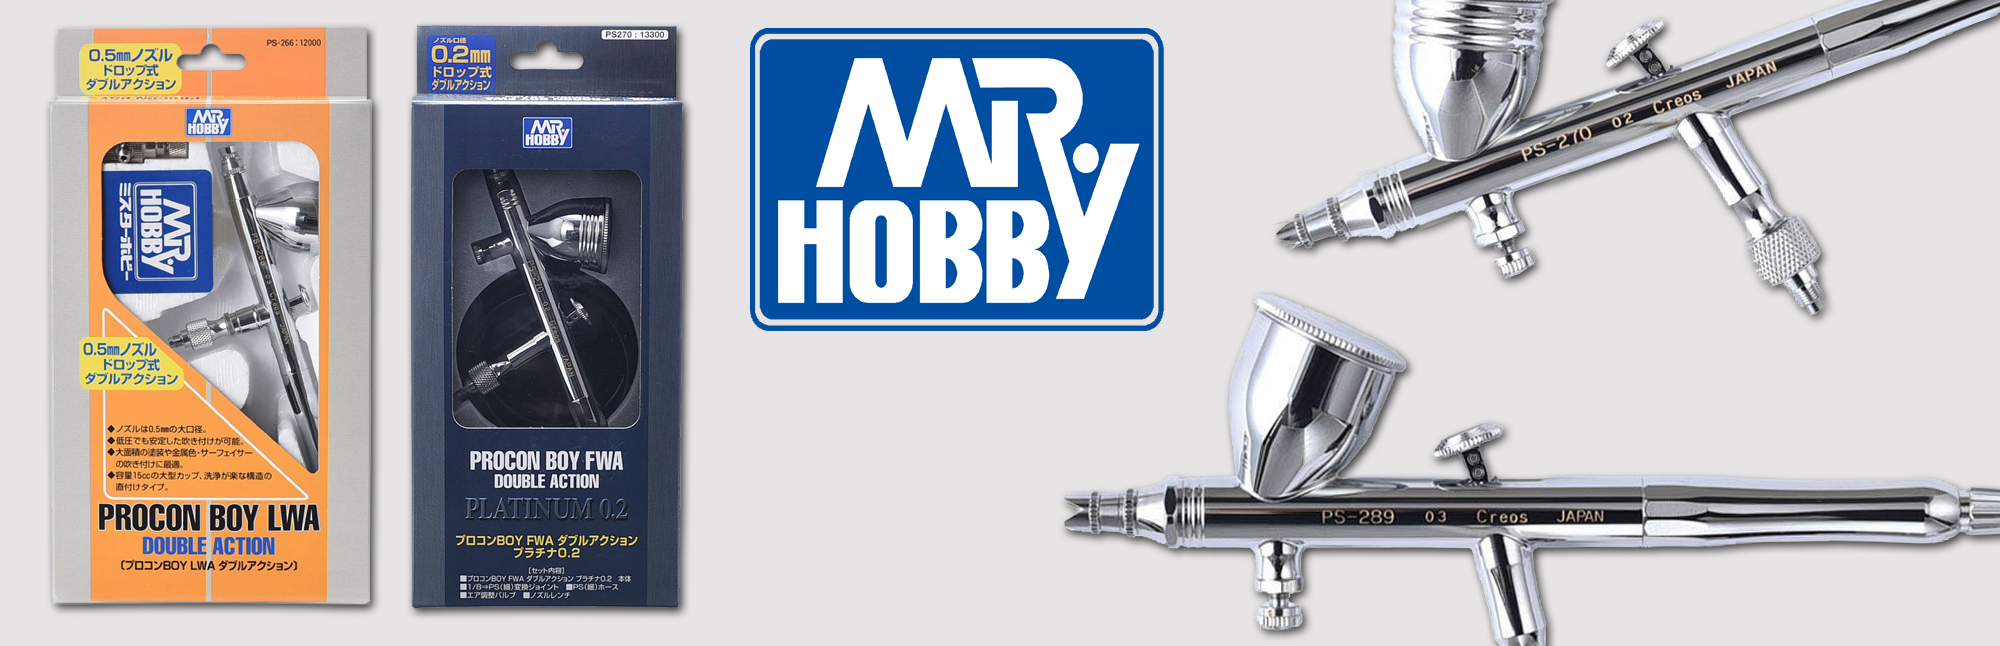 Mr Hobby Airbrushes